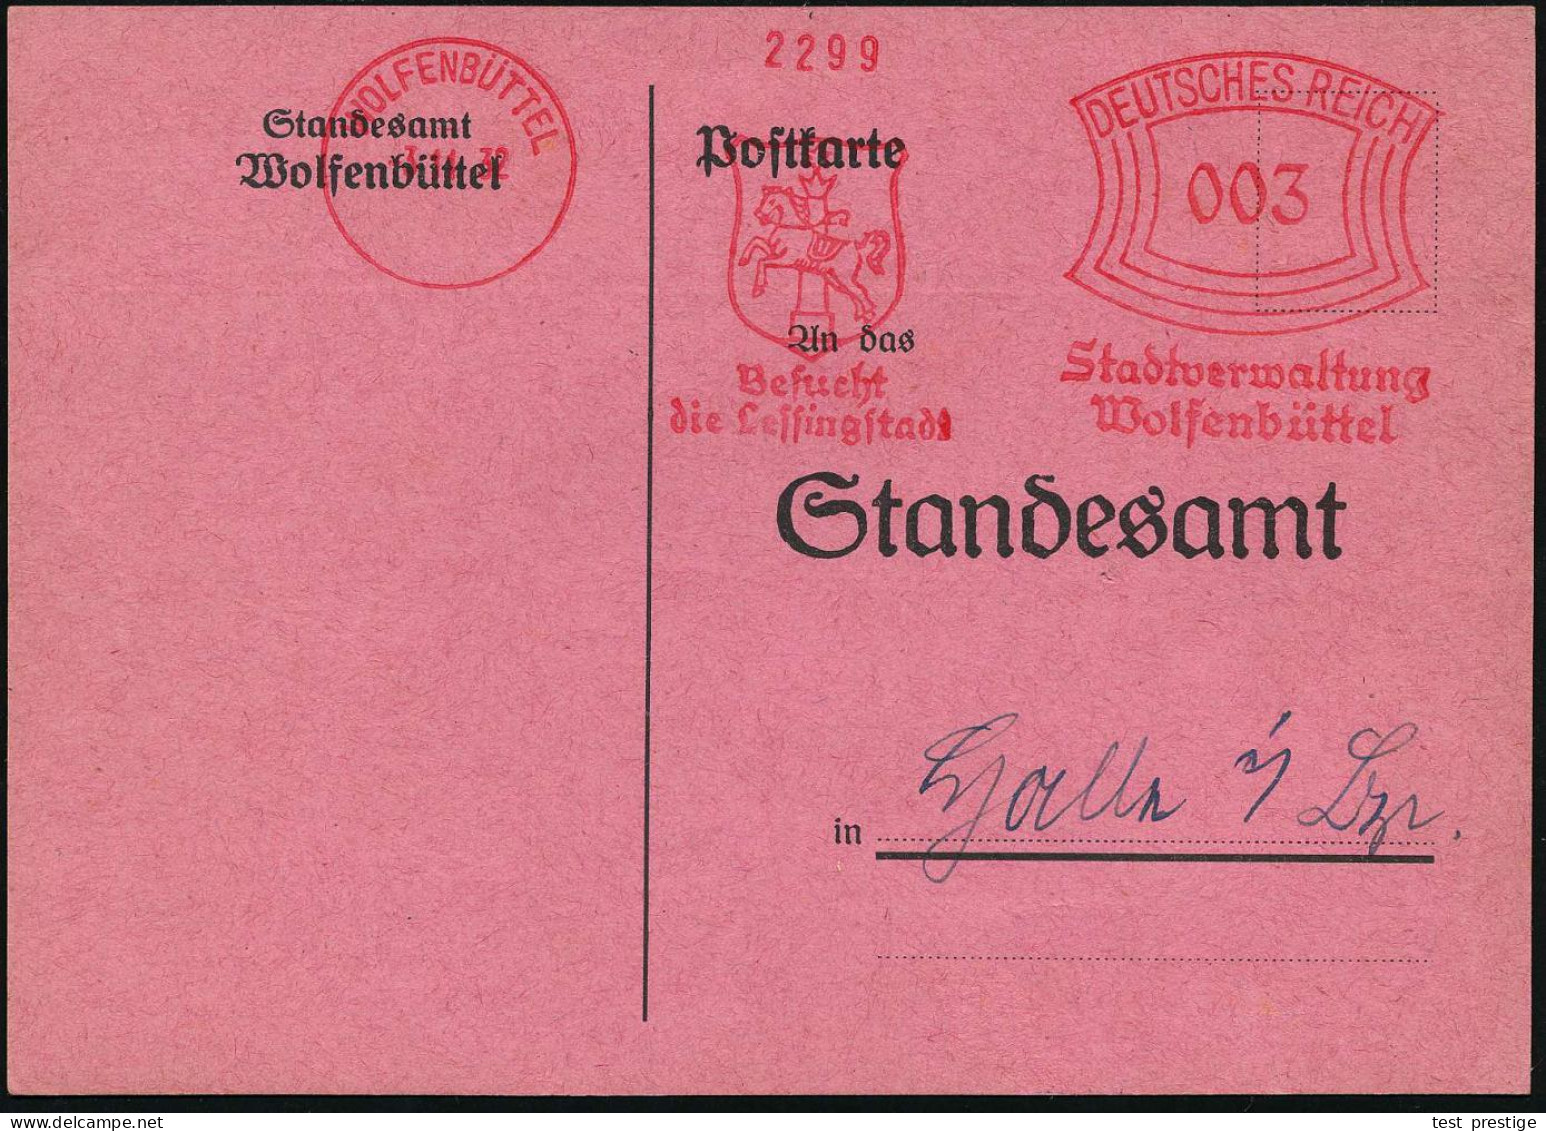 WOLFENBÜTTEL/ Besucht/ Die Lessingstadt/ Stadtverwaltung.. 1932 (3.11.) Seltener AFS Francotyp (Stadtwappen Mit Pferd) K - Teatro